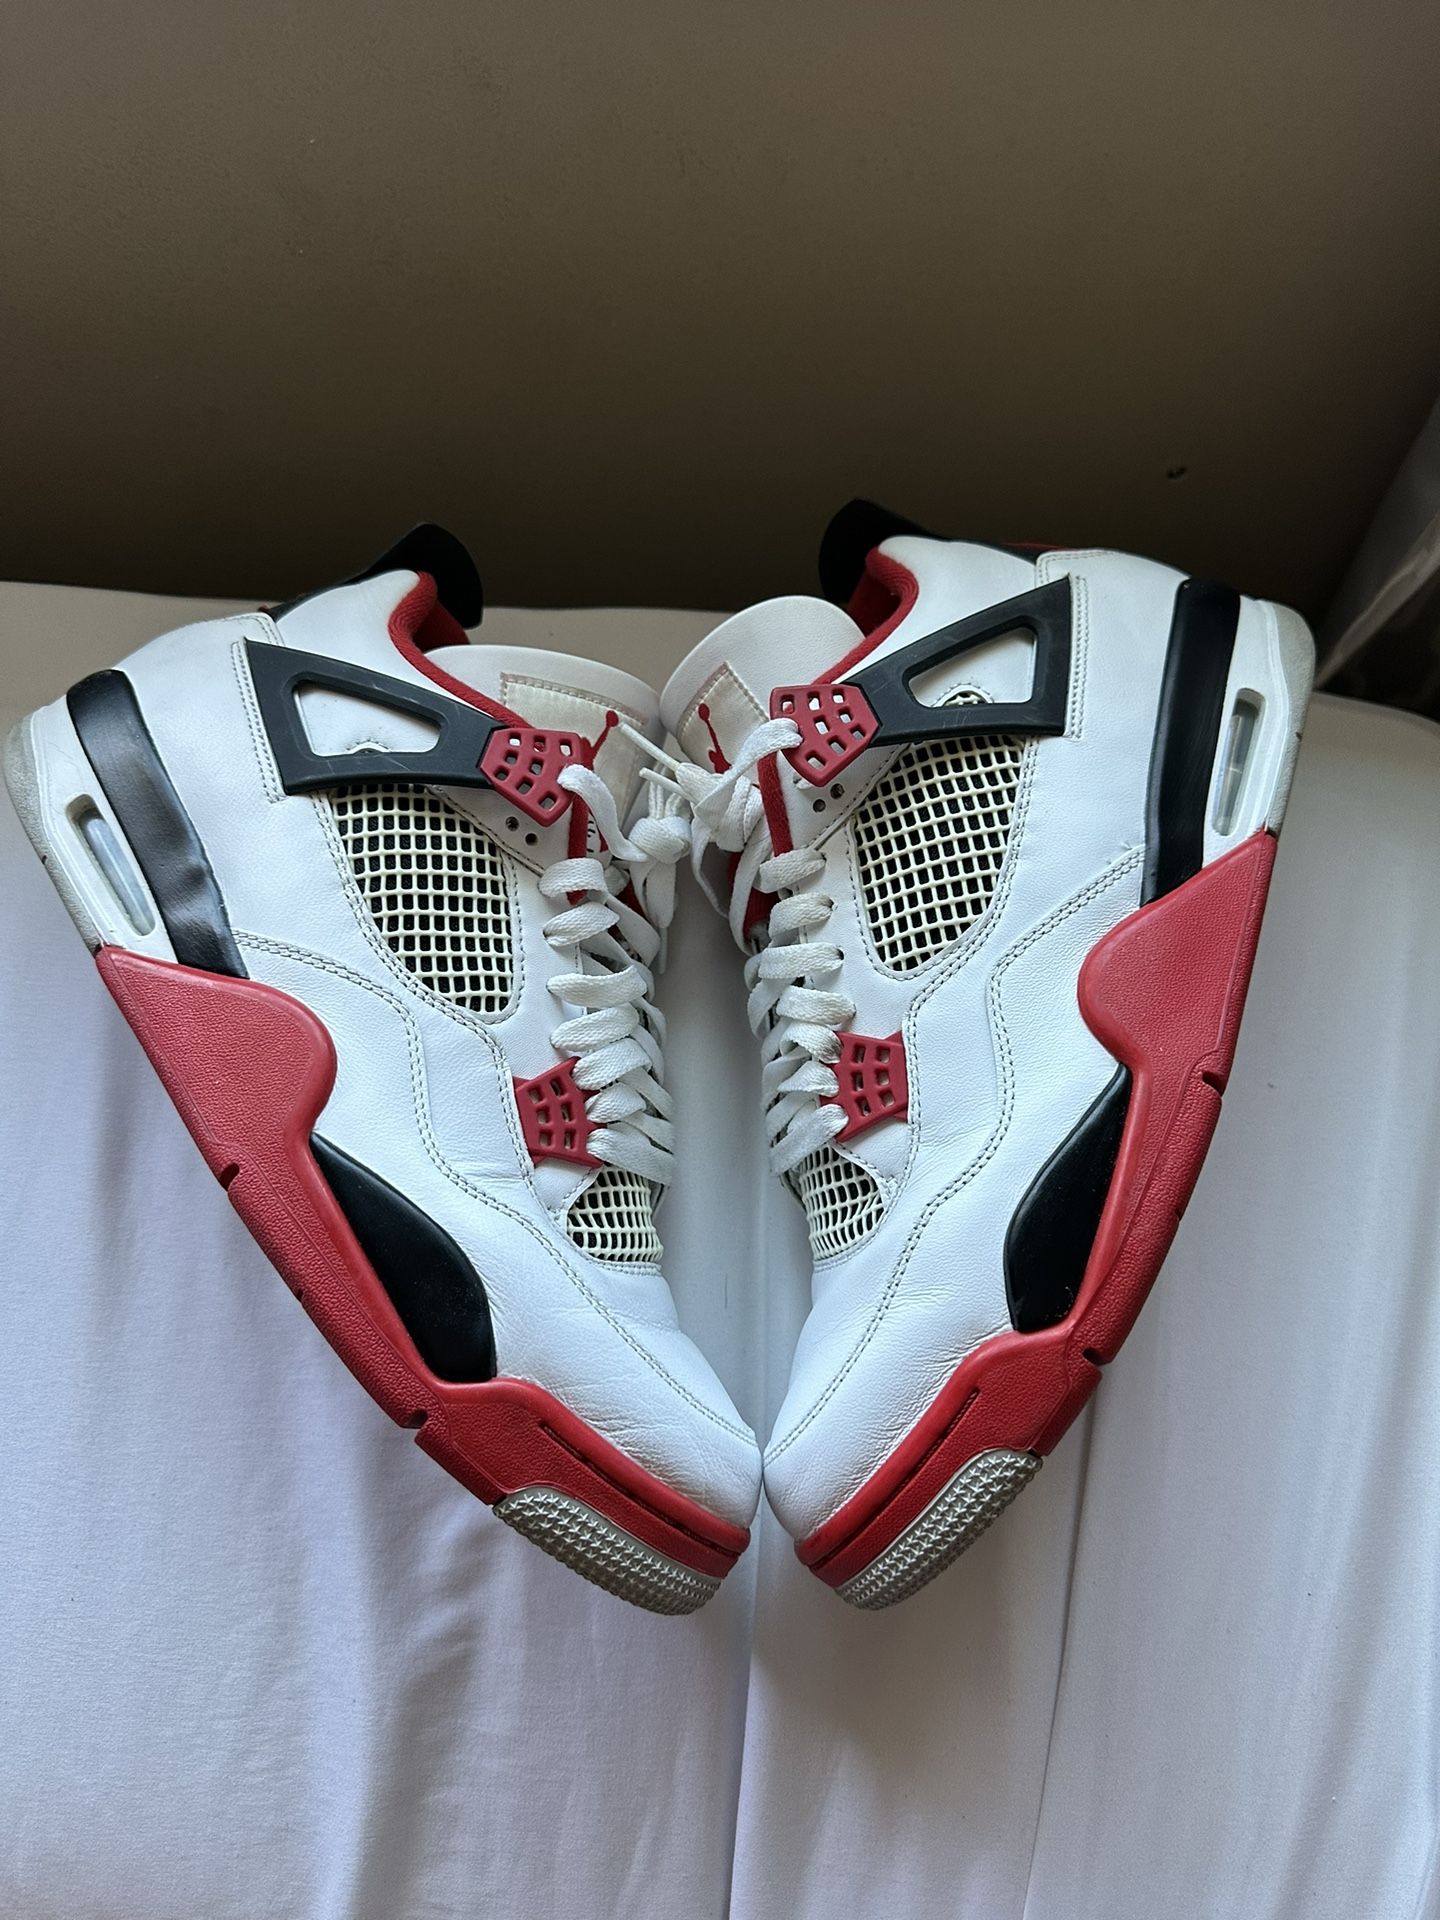 Jordan 4 Fire Red 2020 Size 11.5